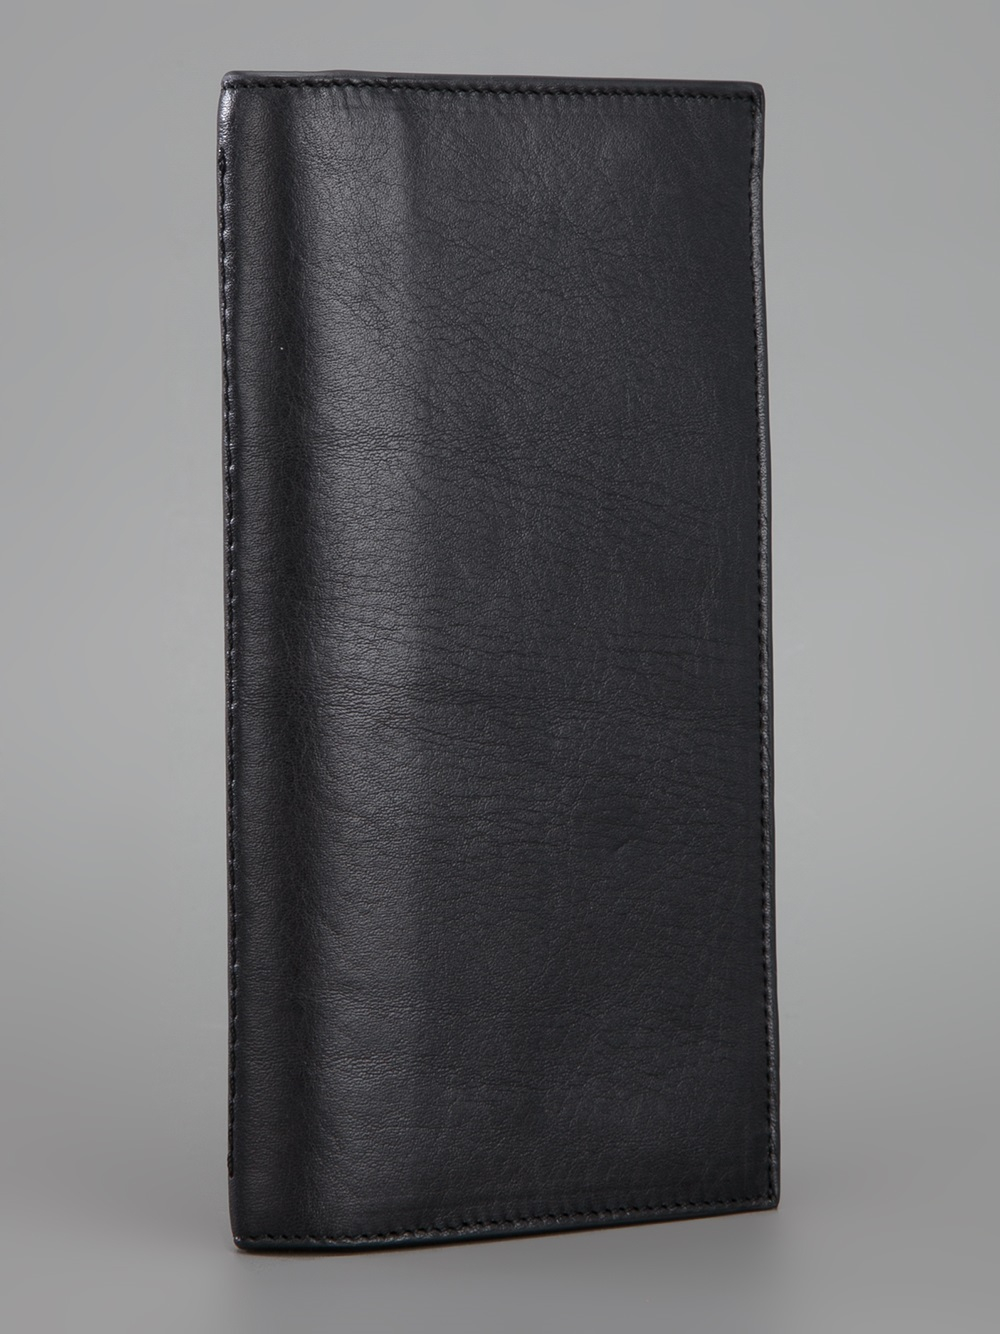 Lanvin Long Bill Fold Wallet in Black for Men - Lyst